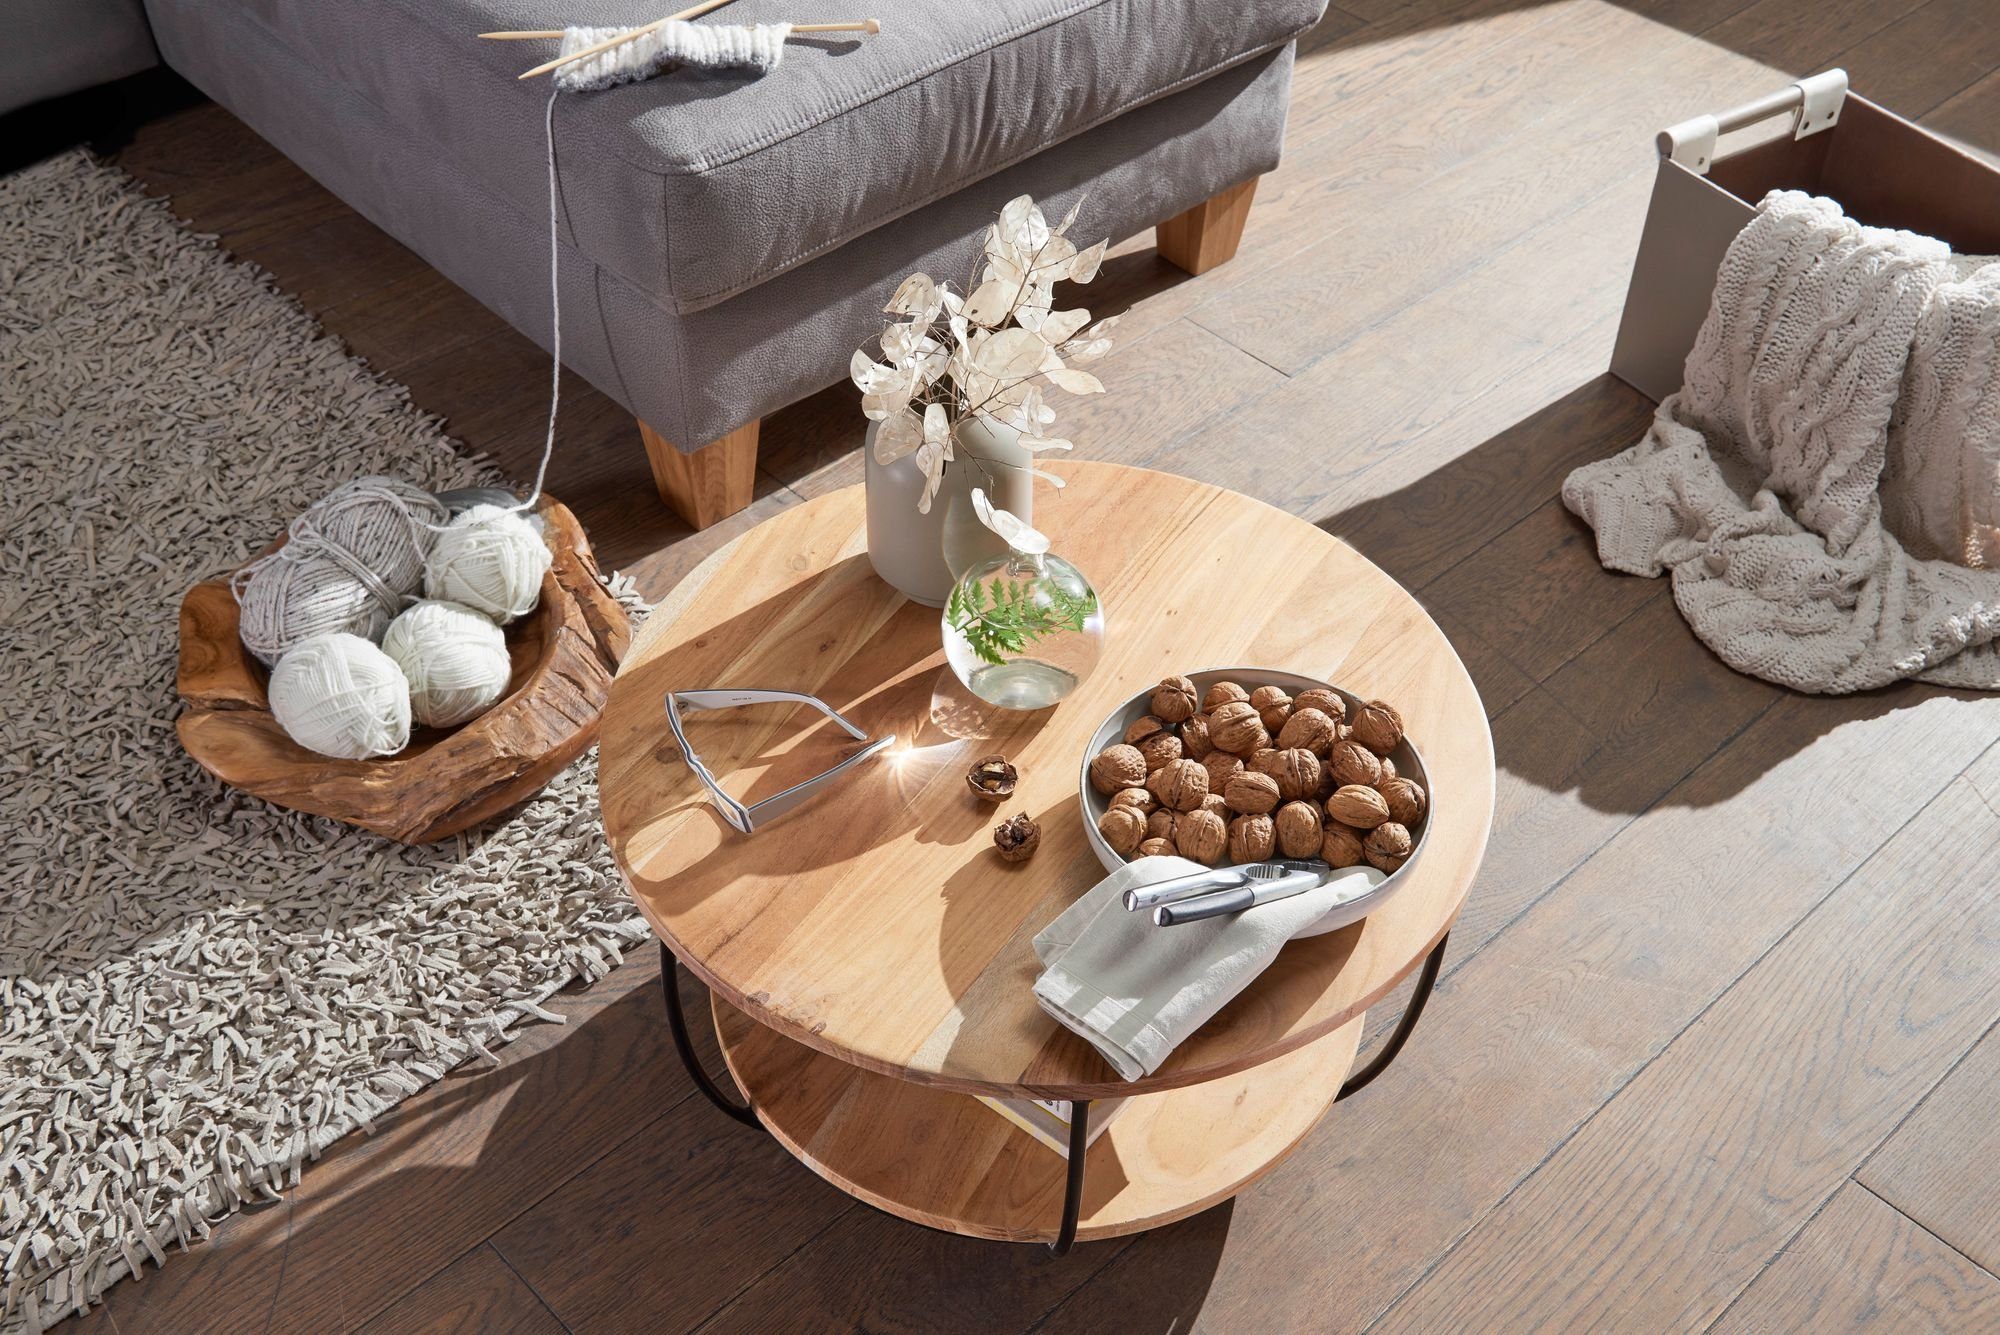 Couchtisch DESIGN Holz Wohnzimmertisch Tisch Sofatisch 60cm Massiv KADIMA